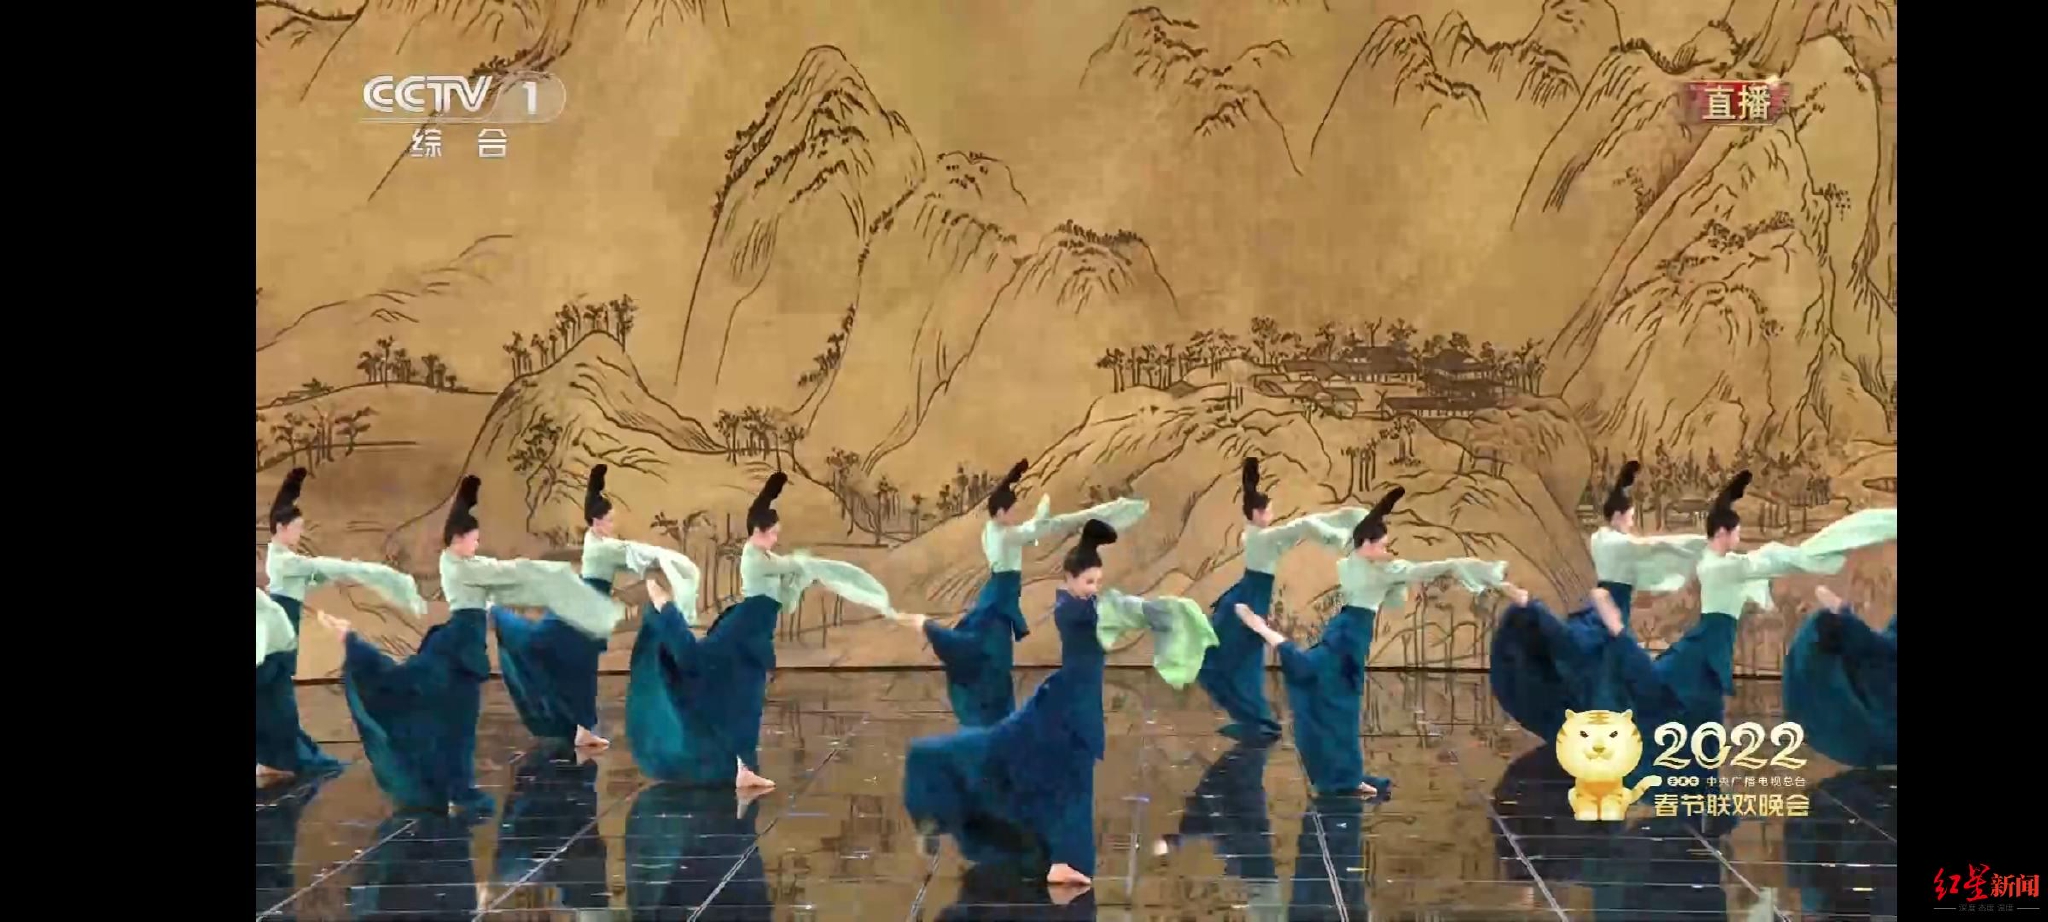 交响音诗《千里江山》灵感来源于《千里江山图》，“节日乐团”因此再度集结广州